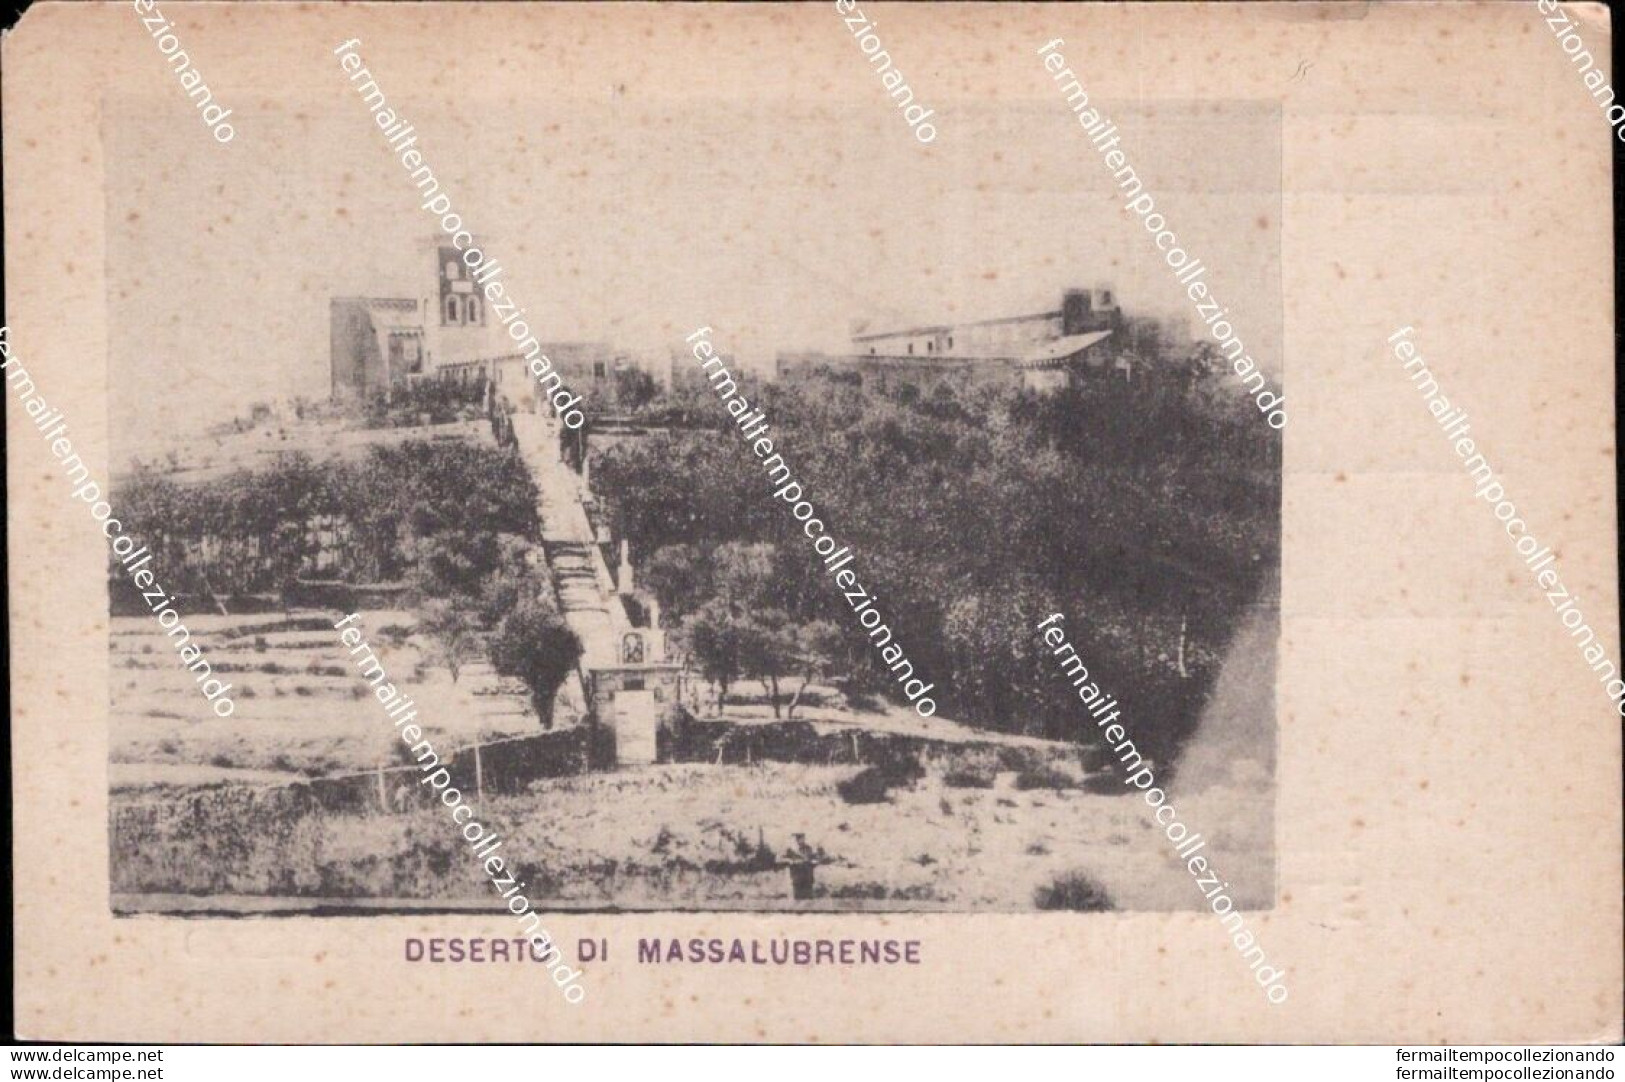 Am762 Cartolina Deserto Di Massalubrense Napoli Campania - Napoli (Neapel)